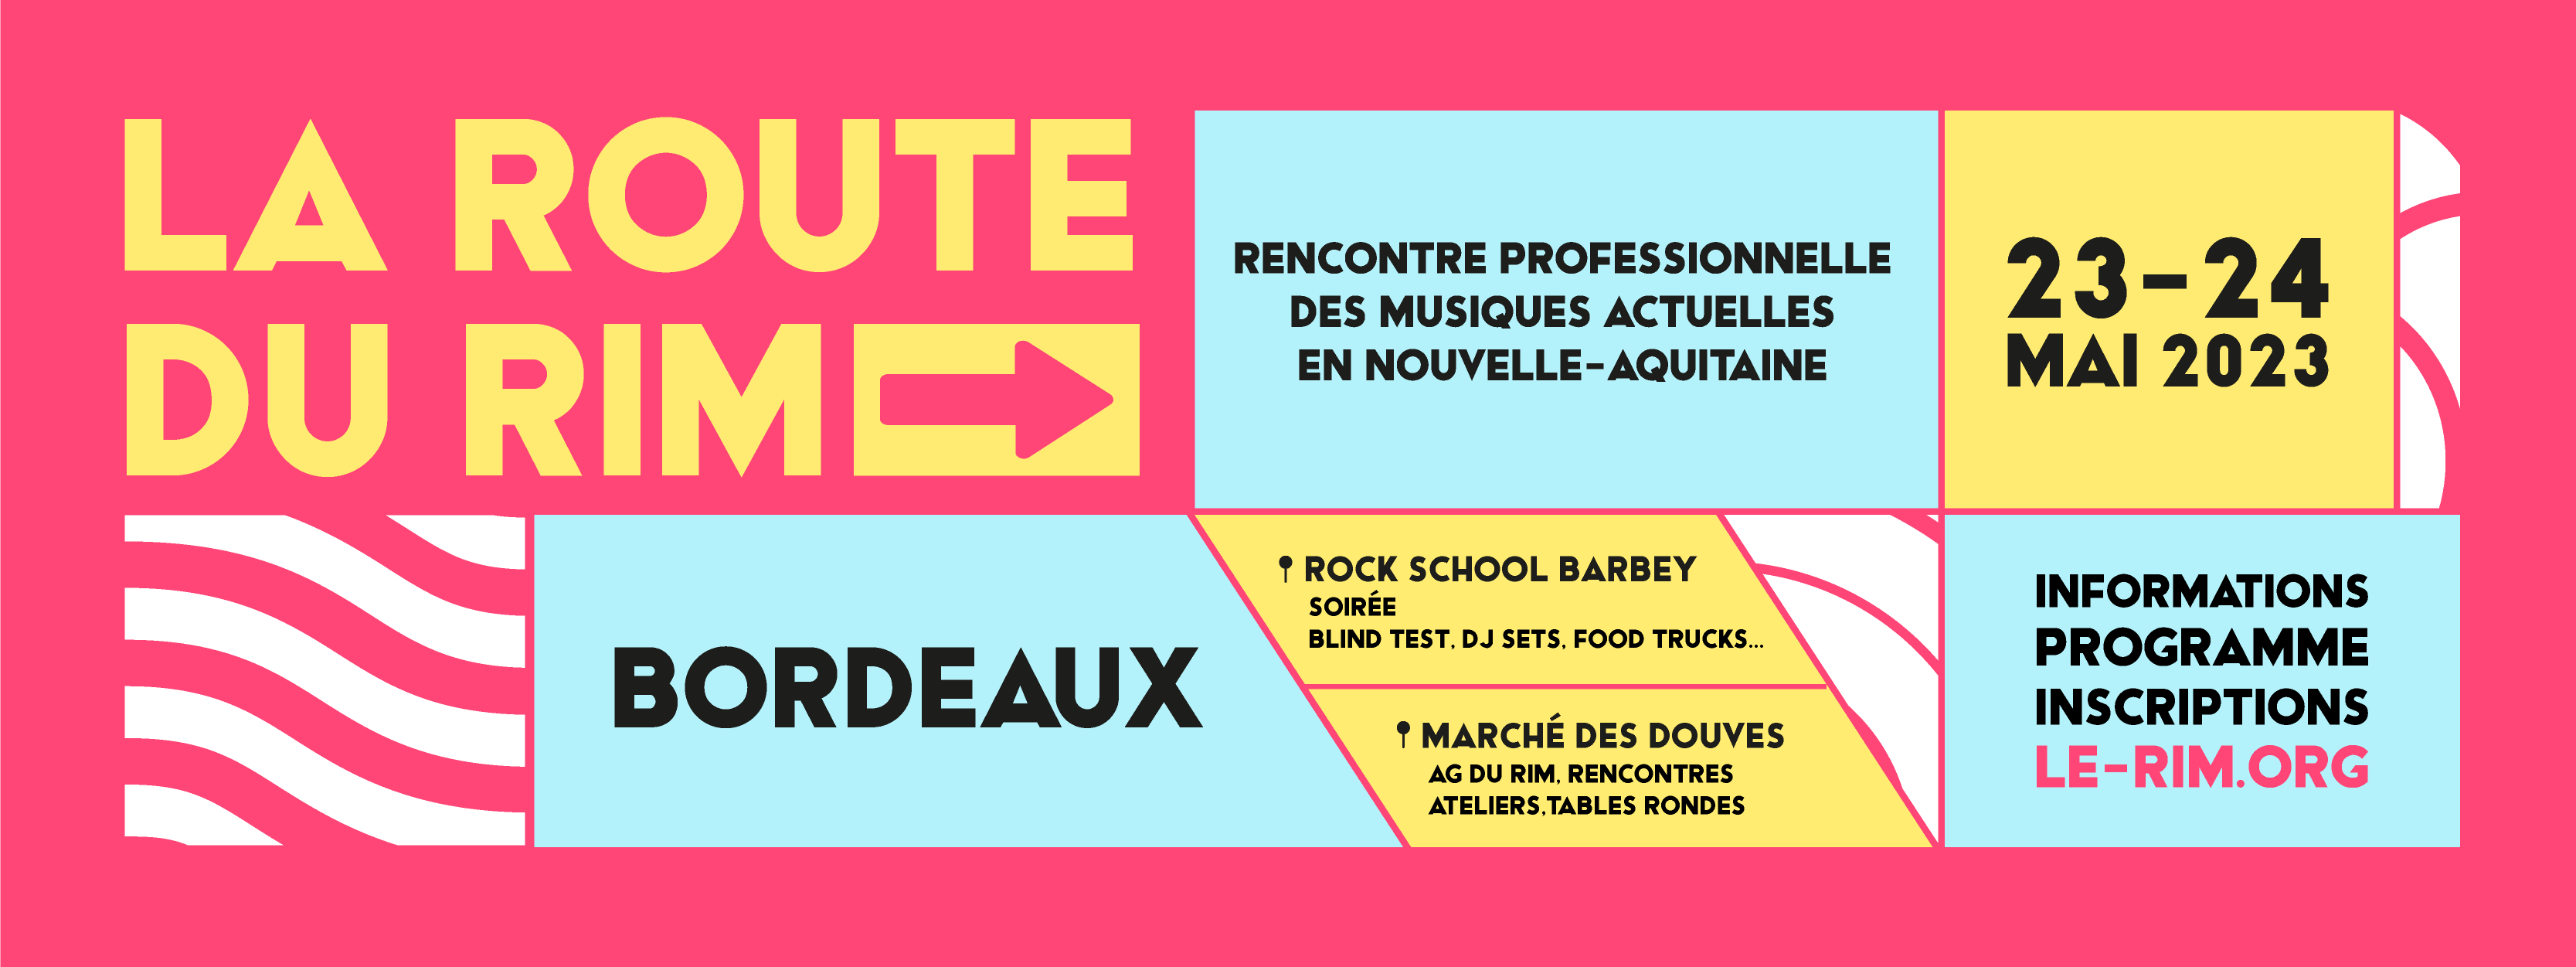 Route-du-rim-rencontre-musiques-actuelles-nouvelle-aquitaine